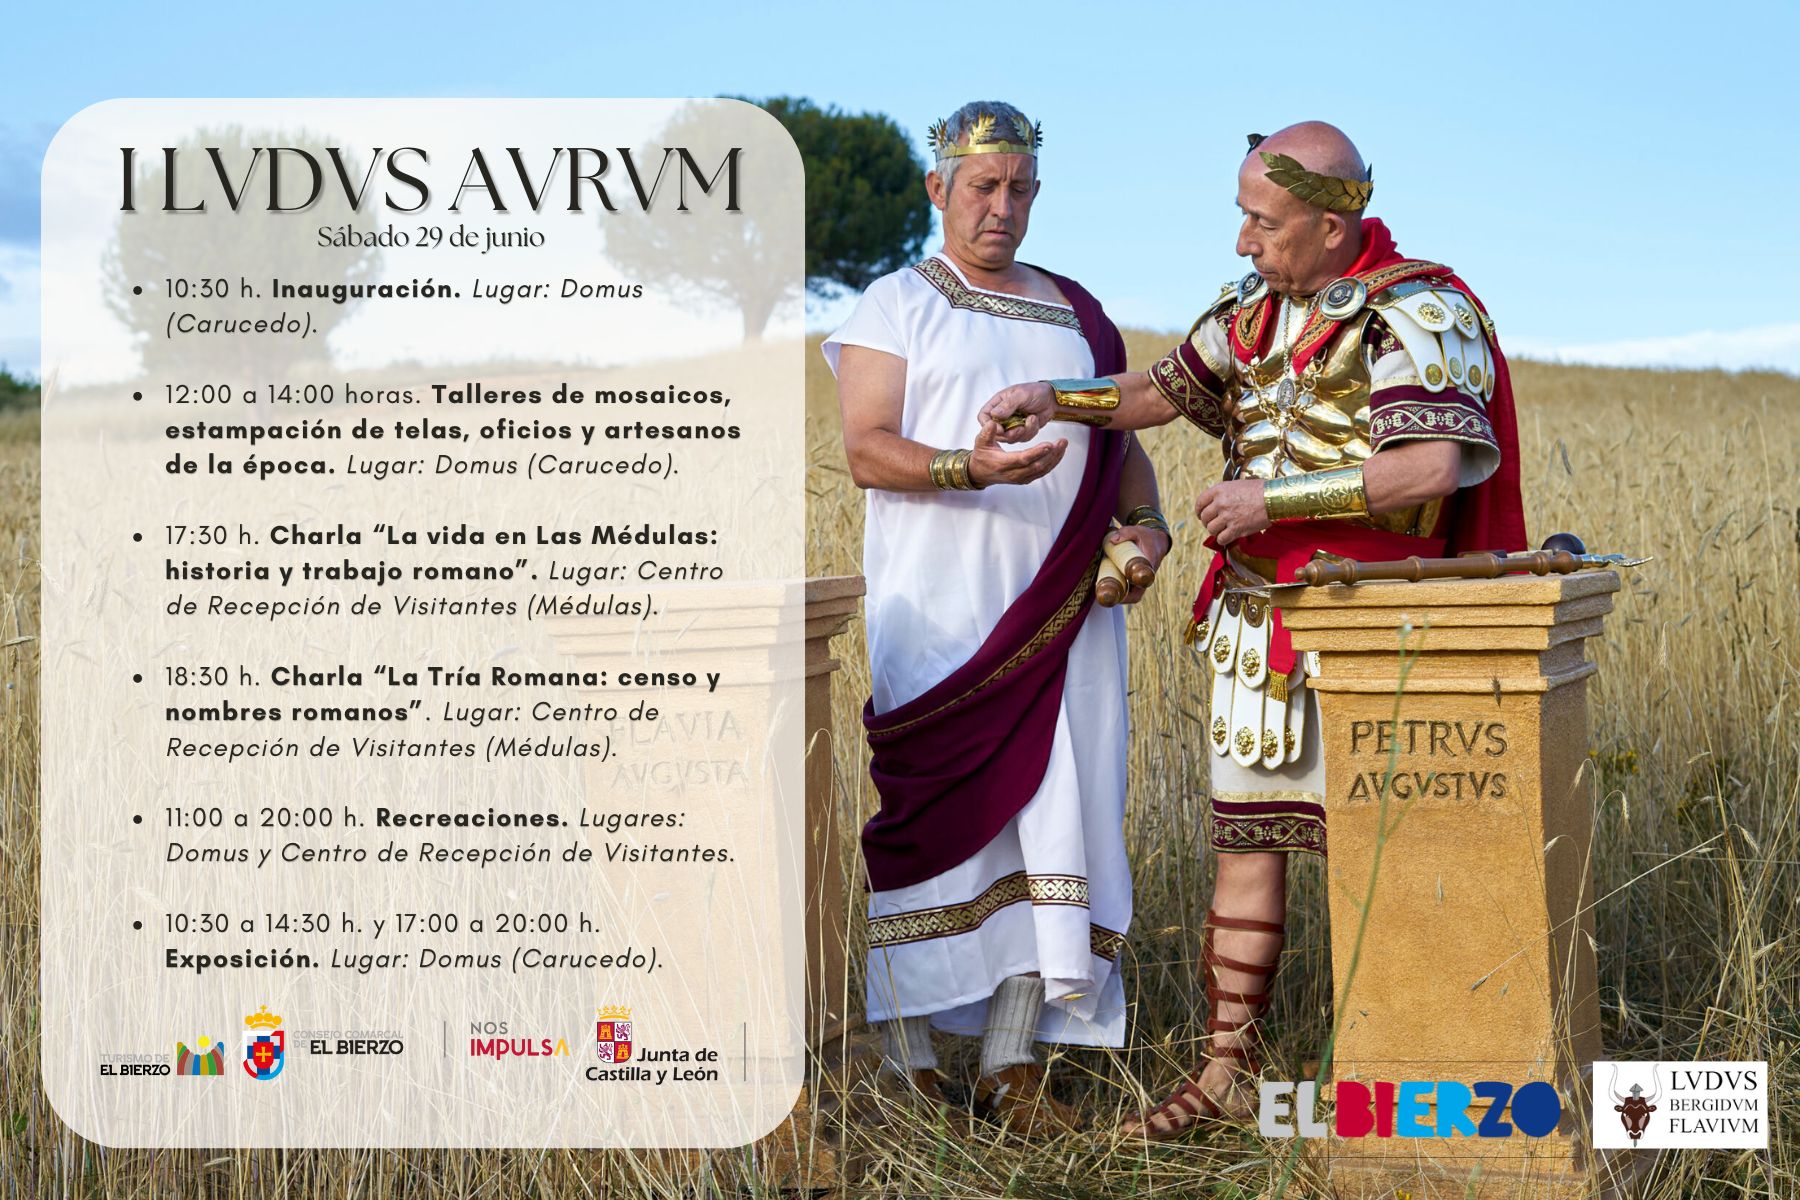 Este sábado se celebra en Las Médulas la I Lvdvs Avrvm, recreación histórica de la época romana 2